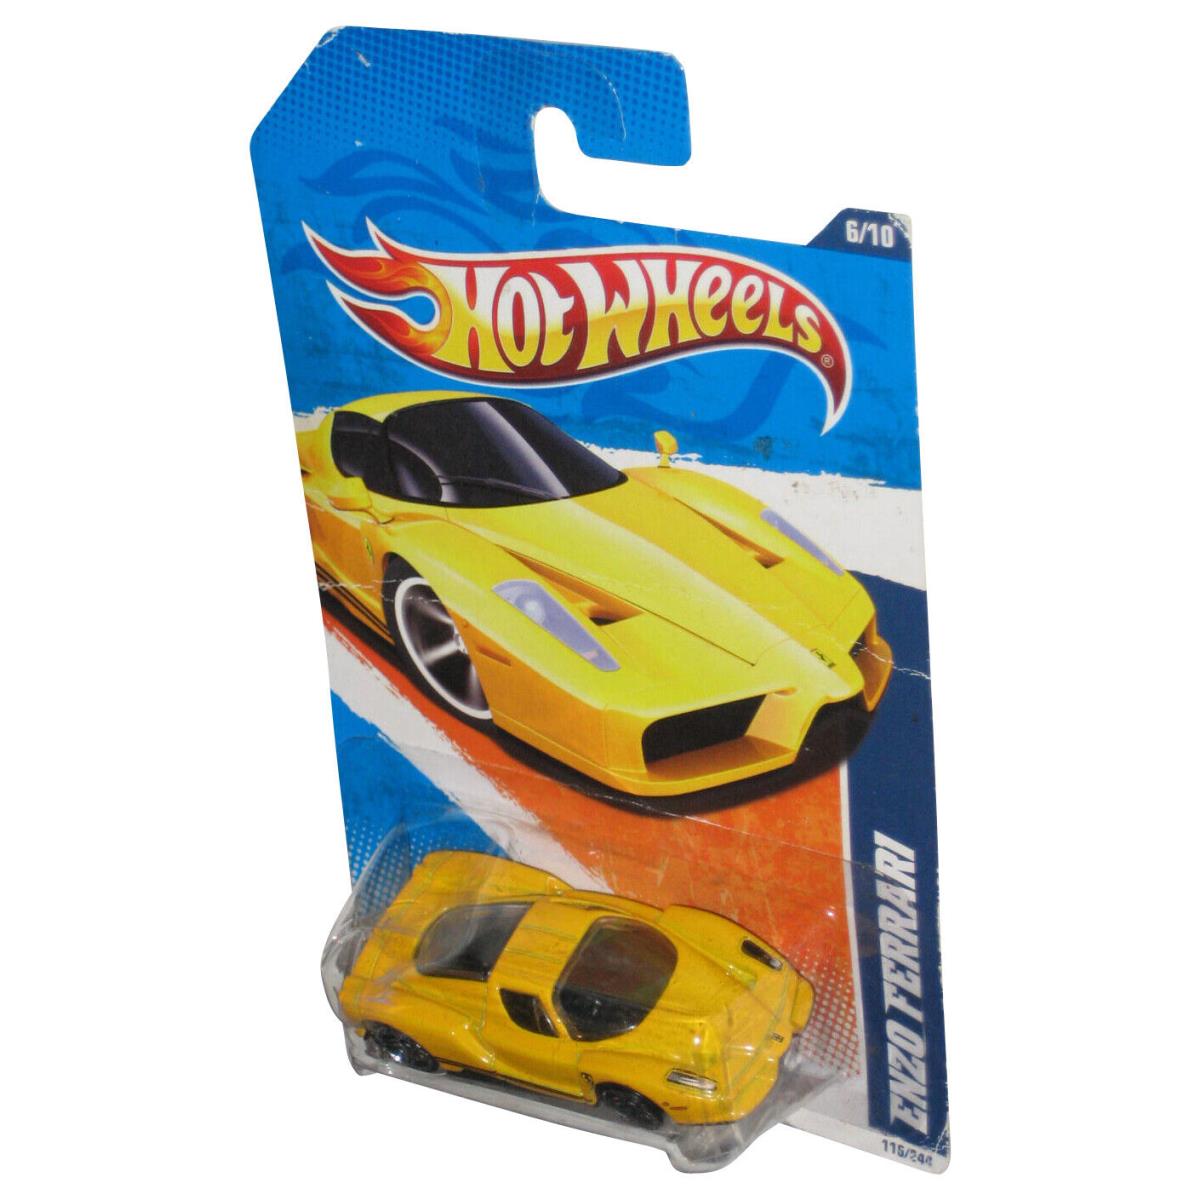 Hot Wheels Nightburnerz 6/10 2010 Yellow Enzo Ferrari Toy Car 116/244 - Dente